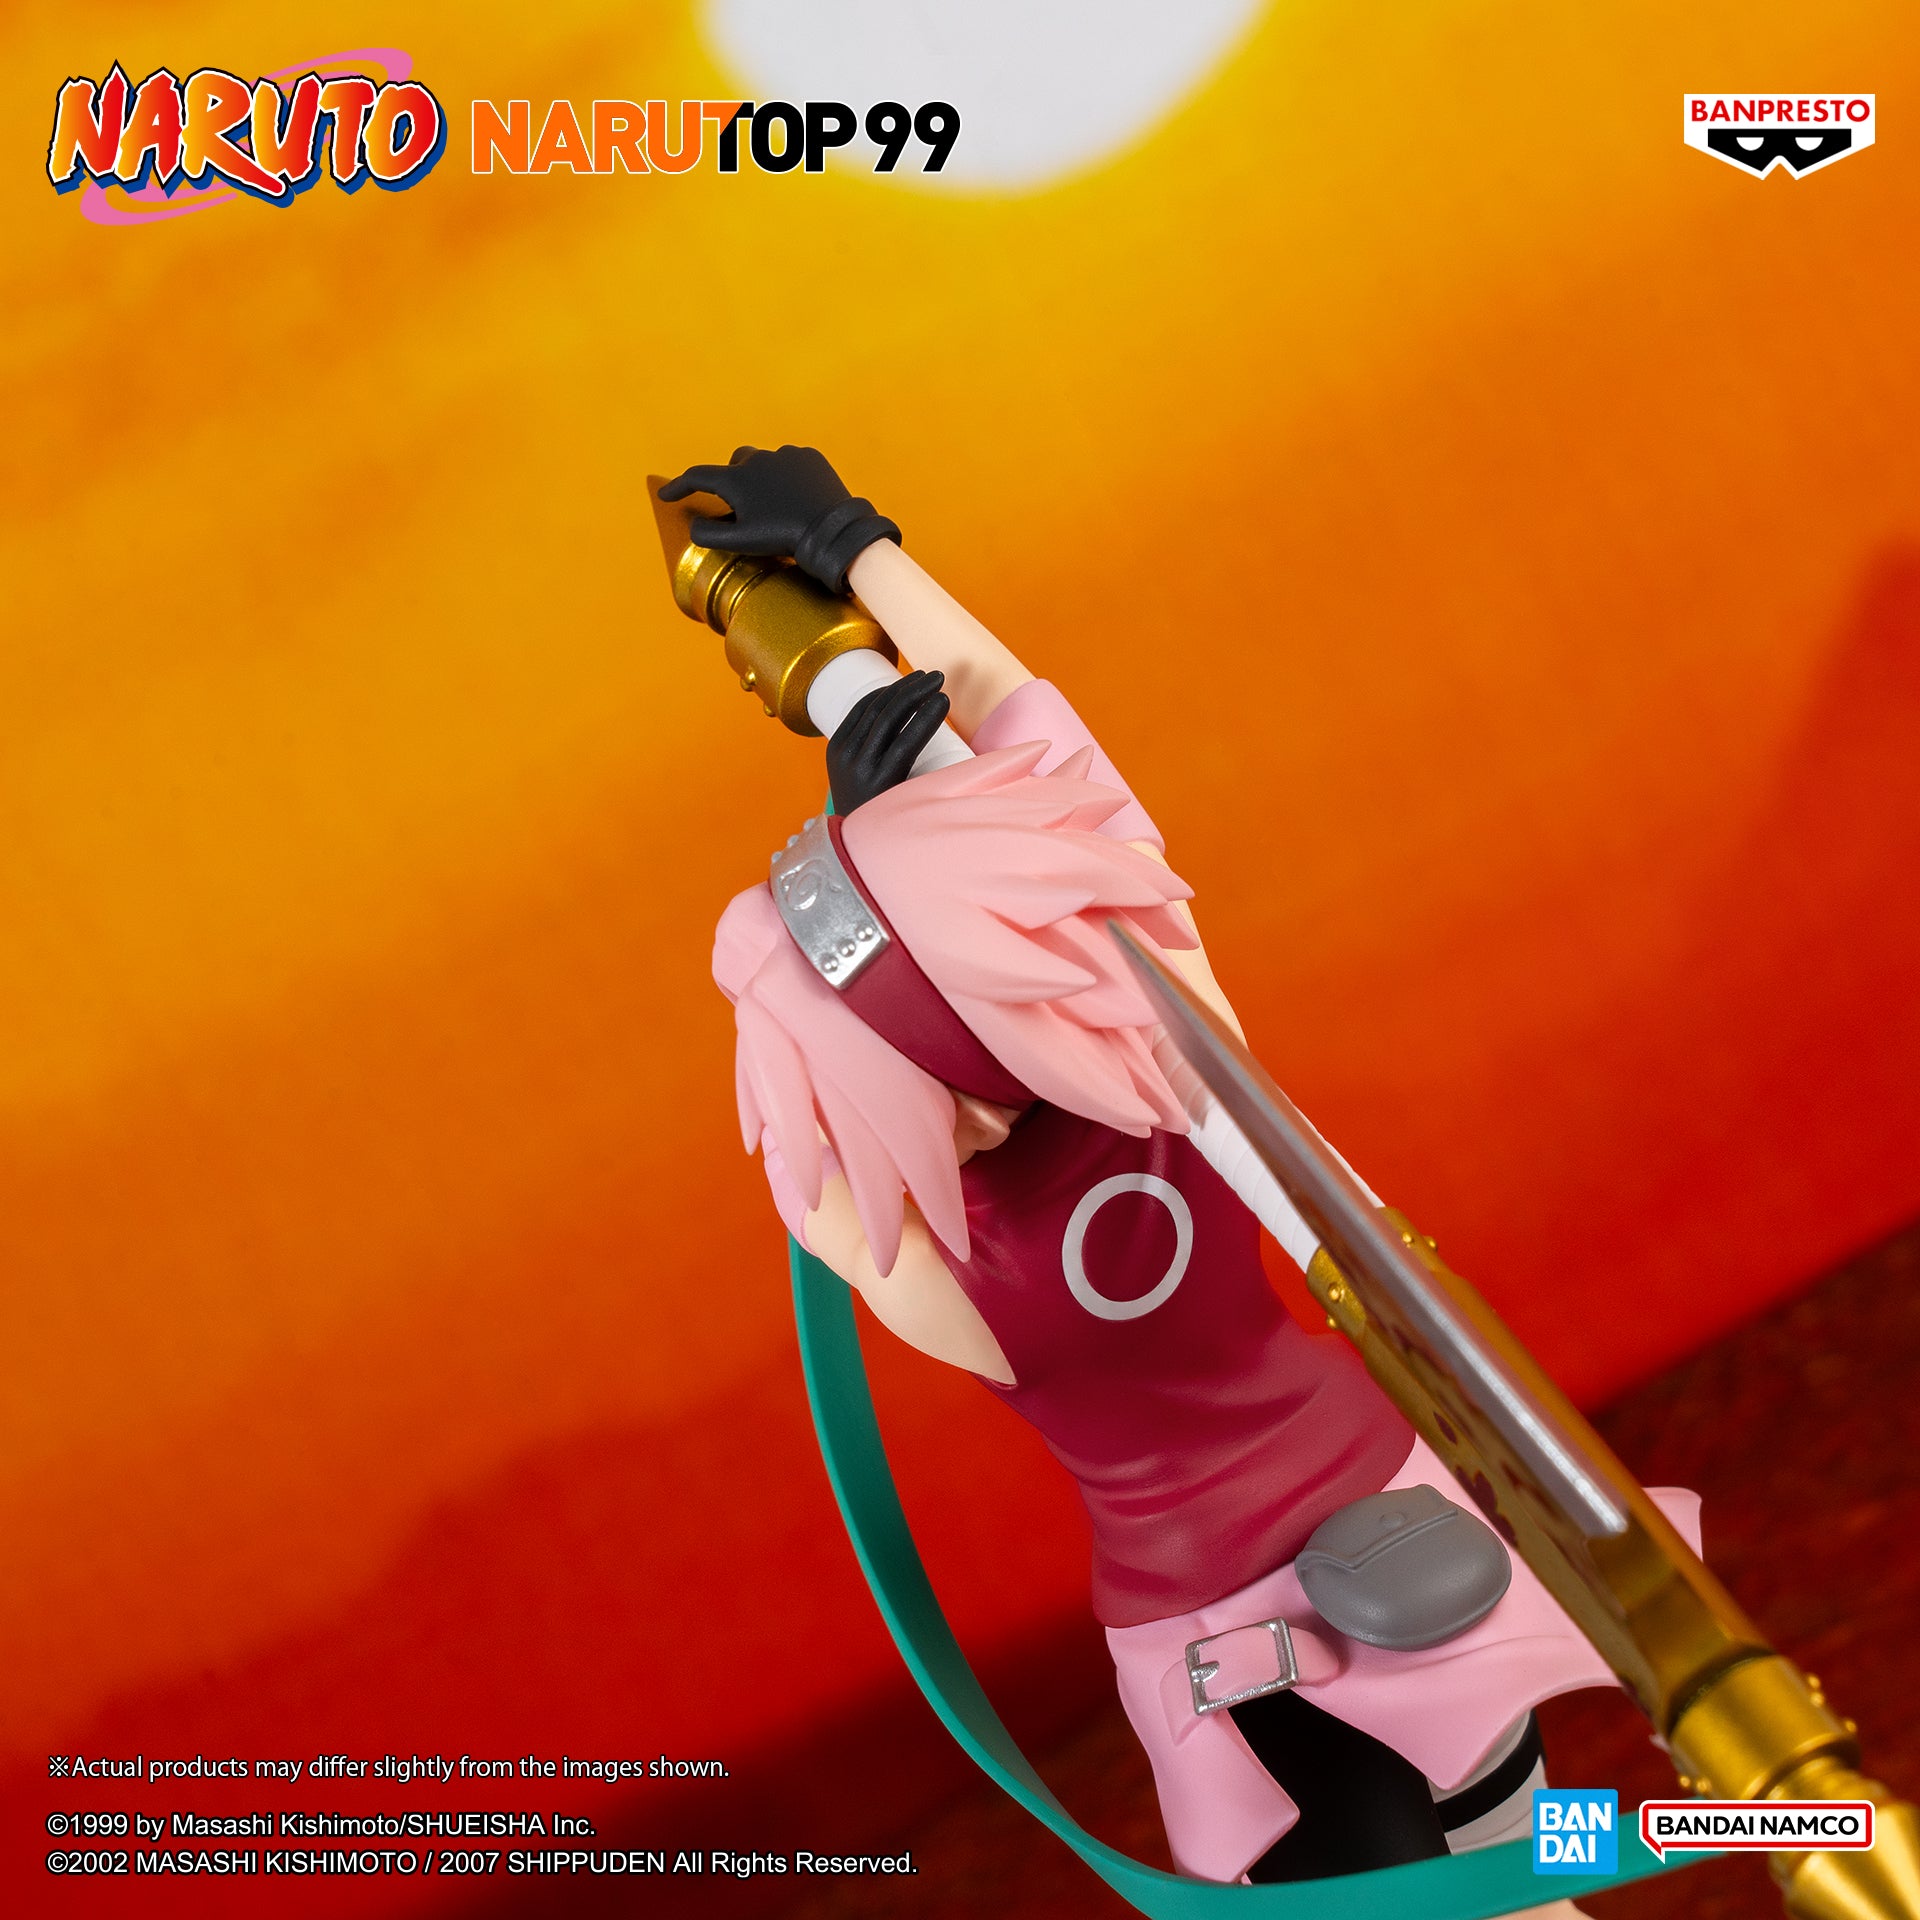 Banpresto: Naruto Narutop99 - Sakura Haruno